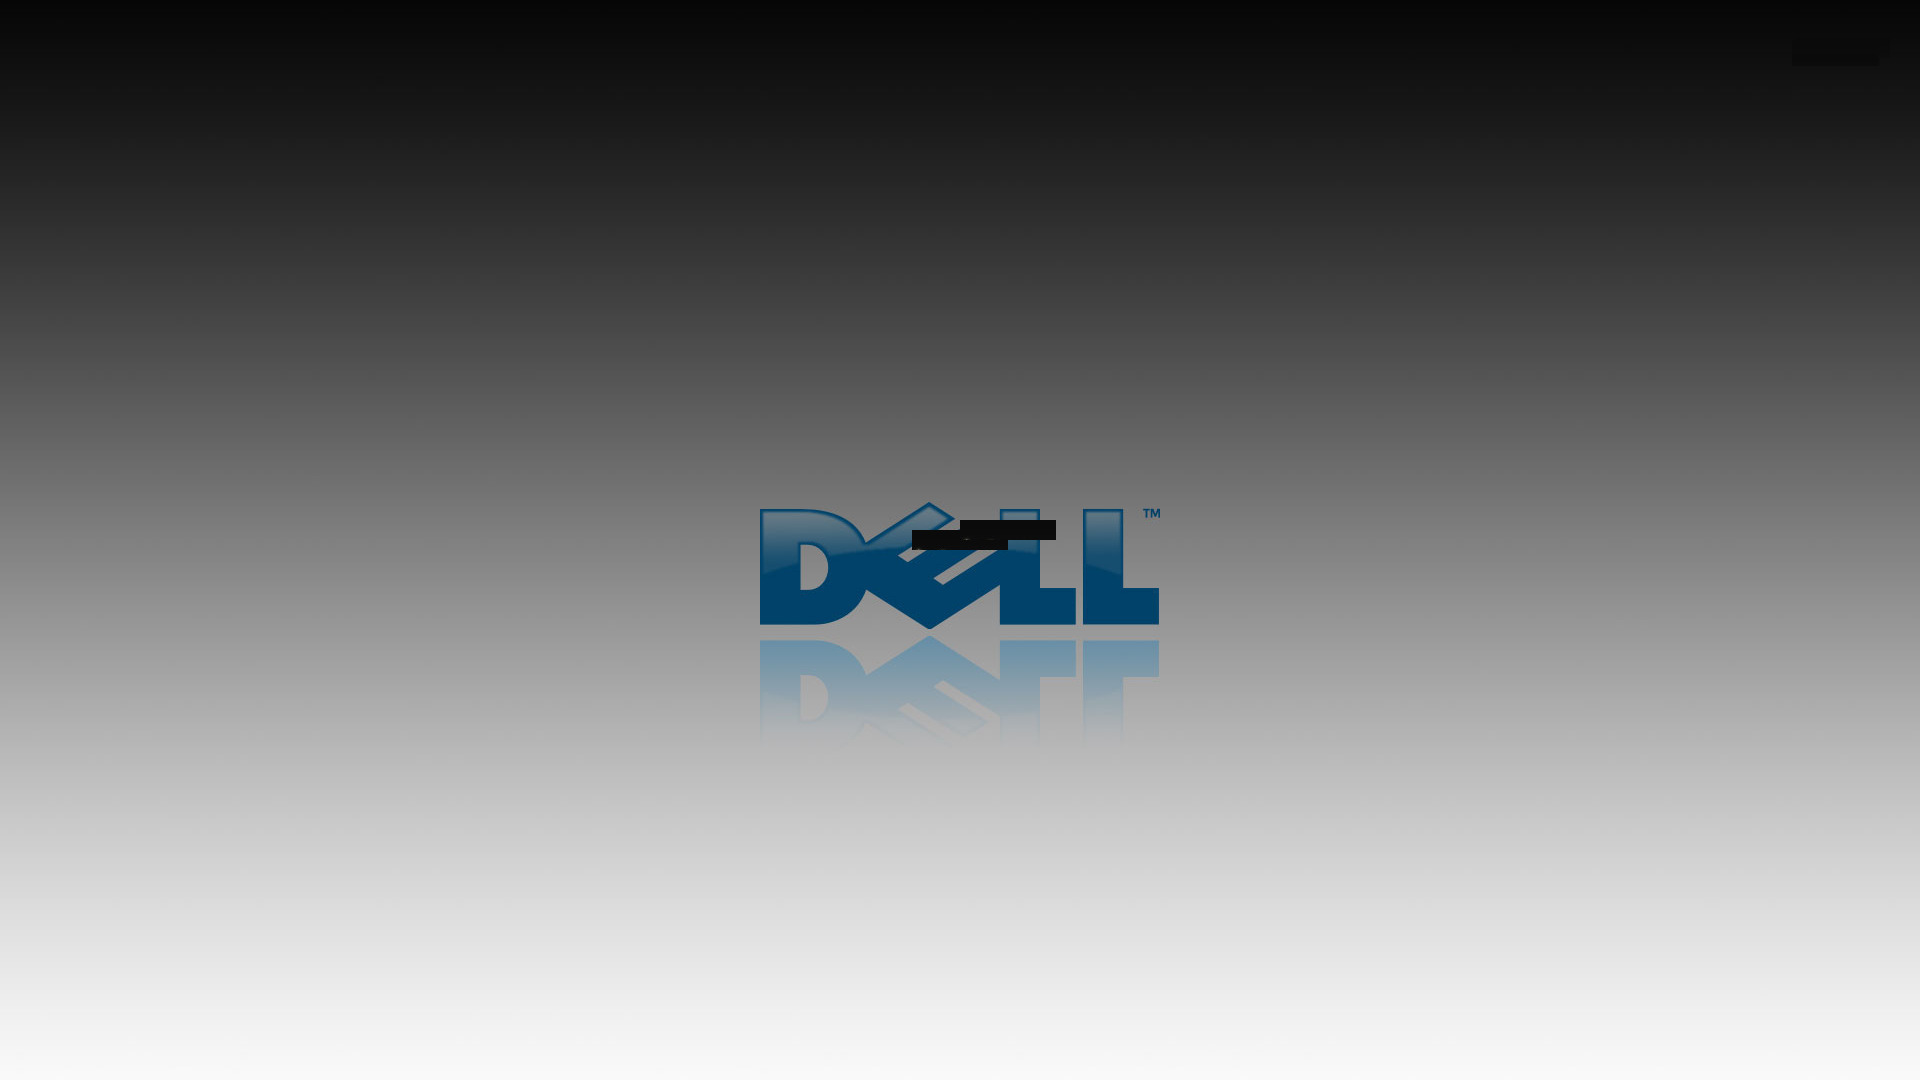 選択した画像 Dell Wallpaper 最もダウンロードされたhd壁紙画像